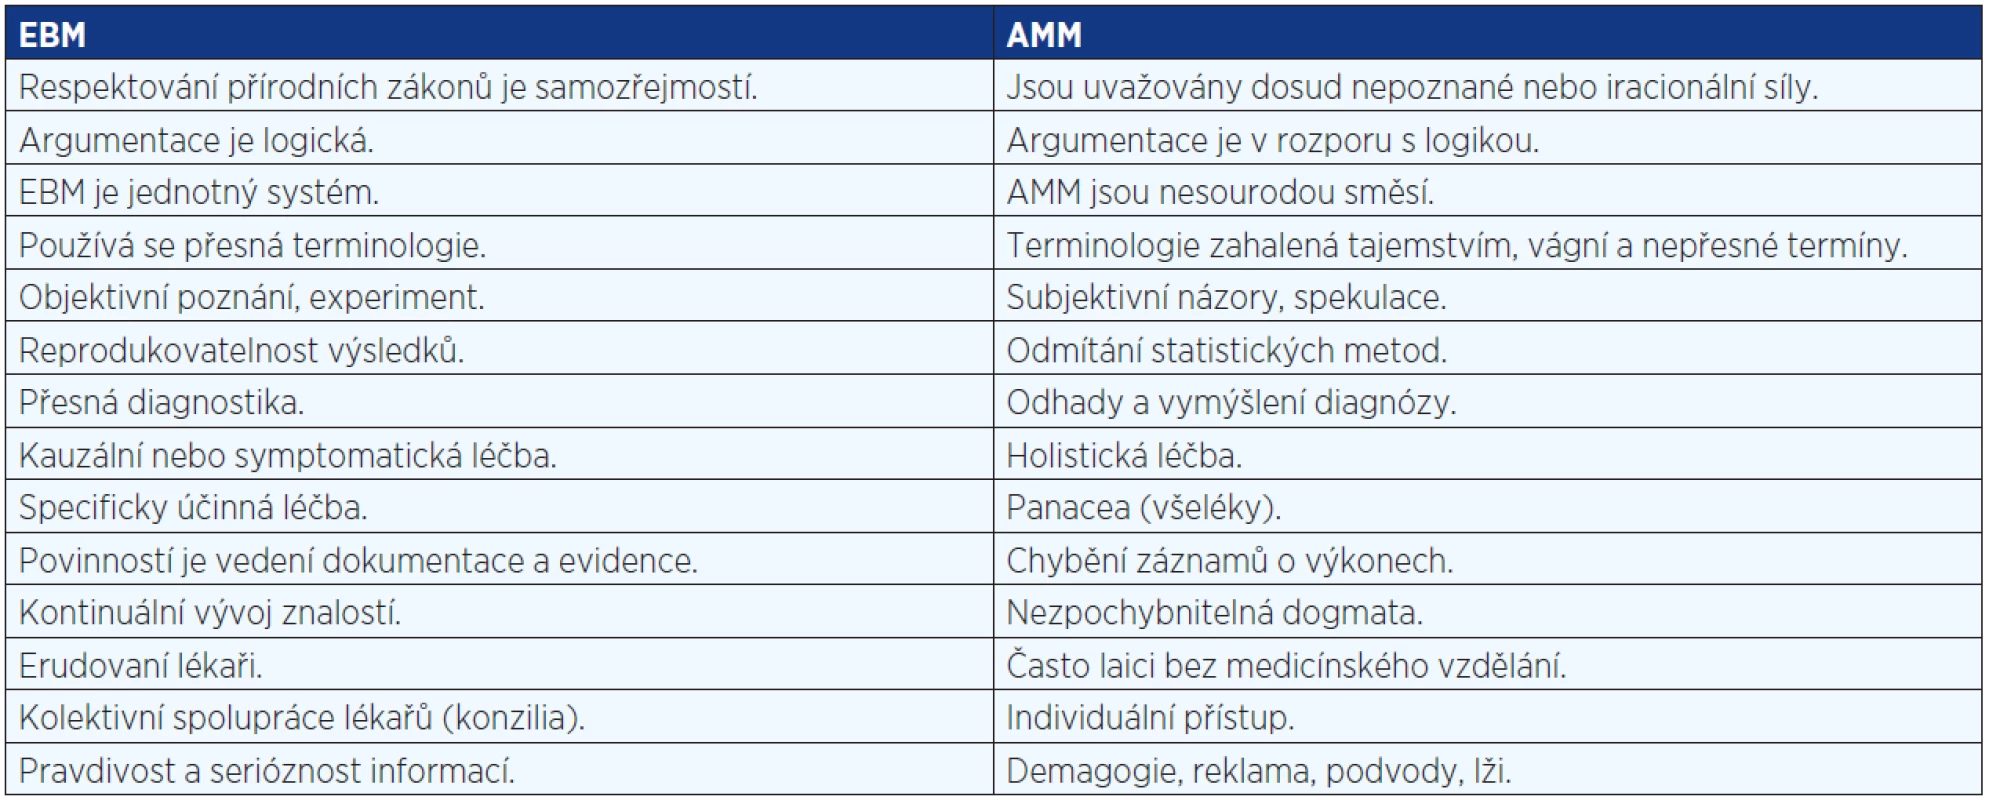 Srovnání trendů a charakteristik EBM a AMM (upraveno dle: Heřt, 1997)